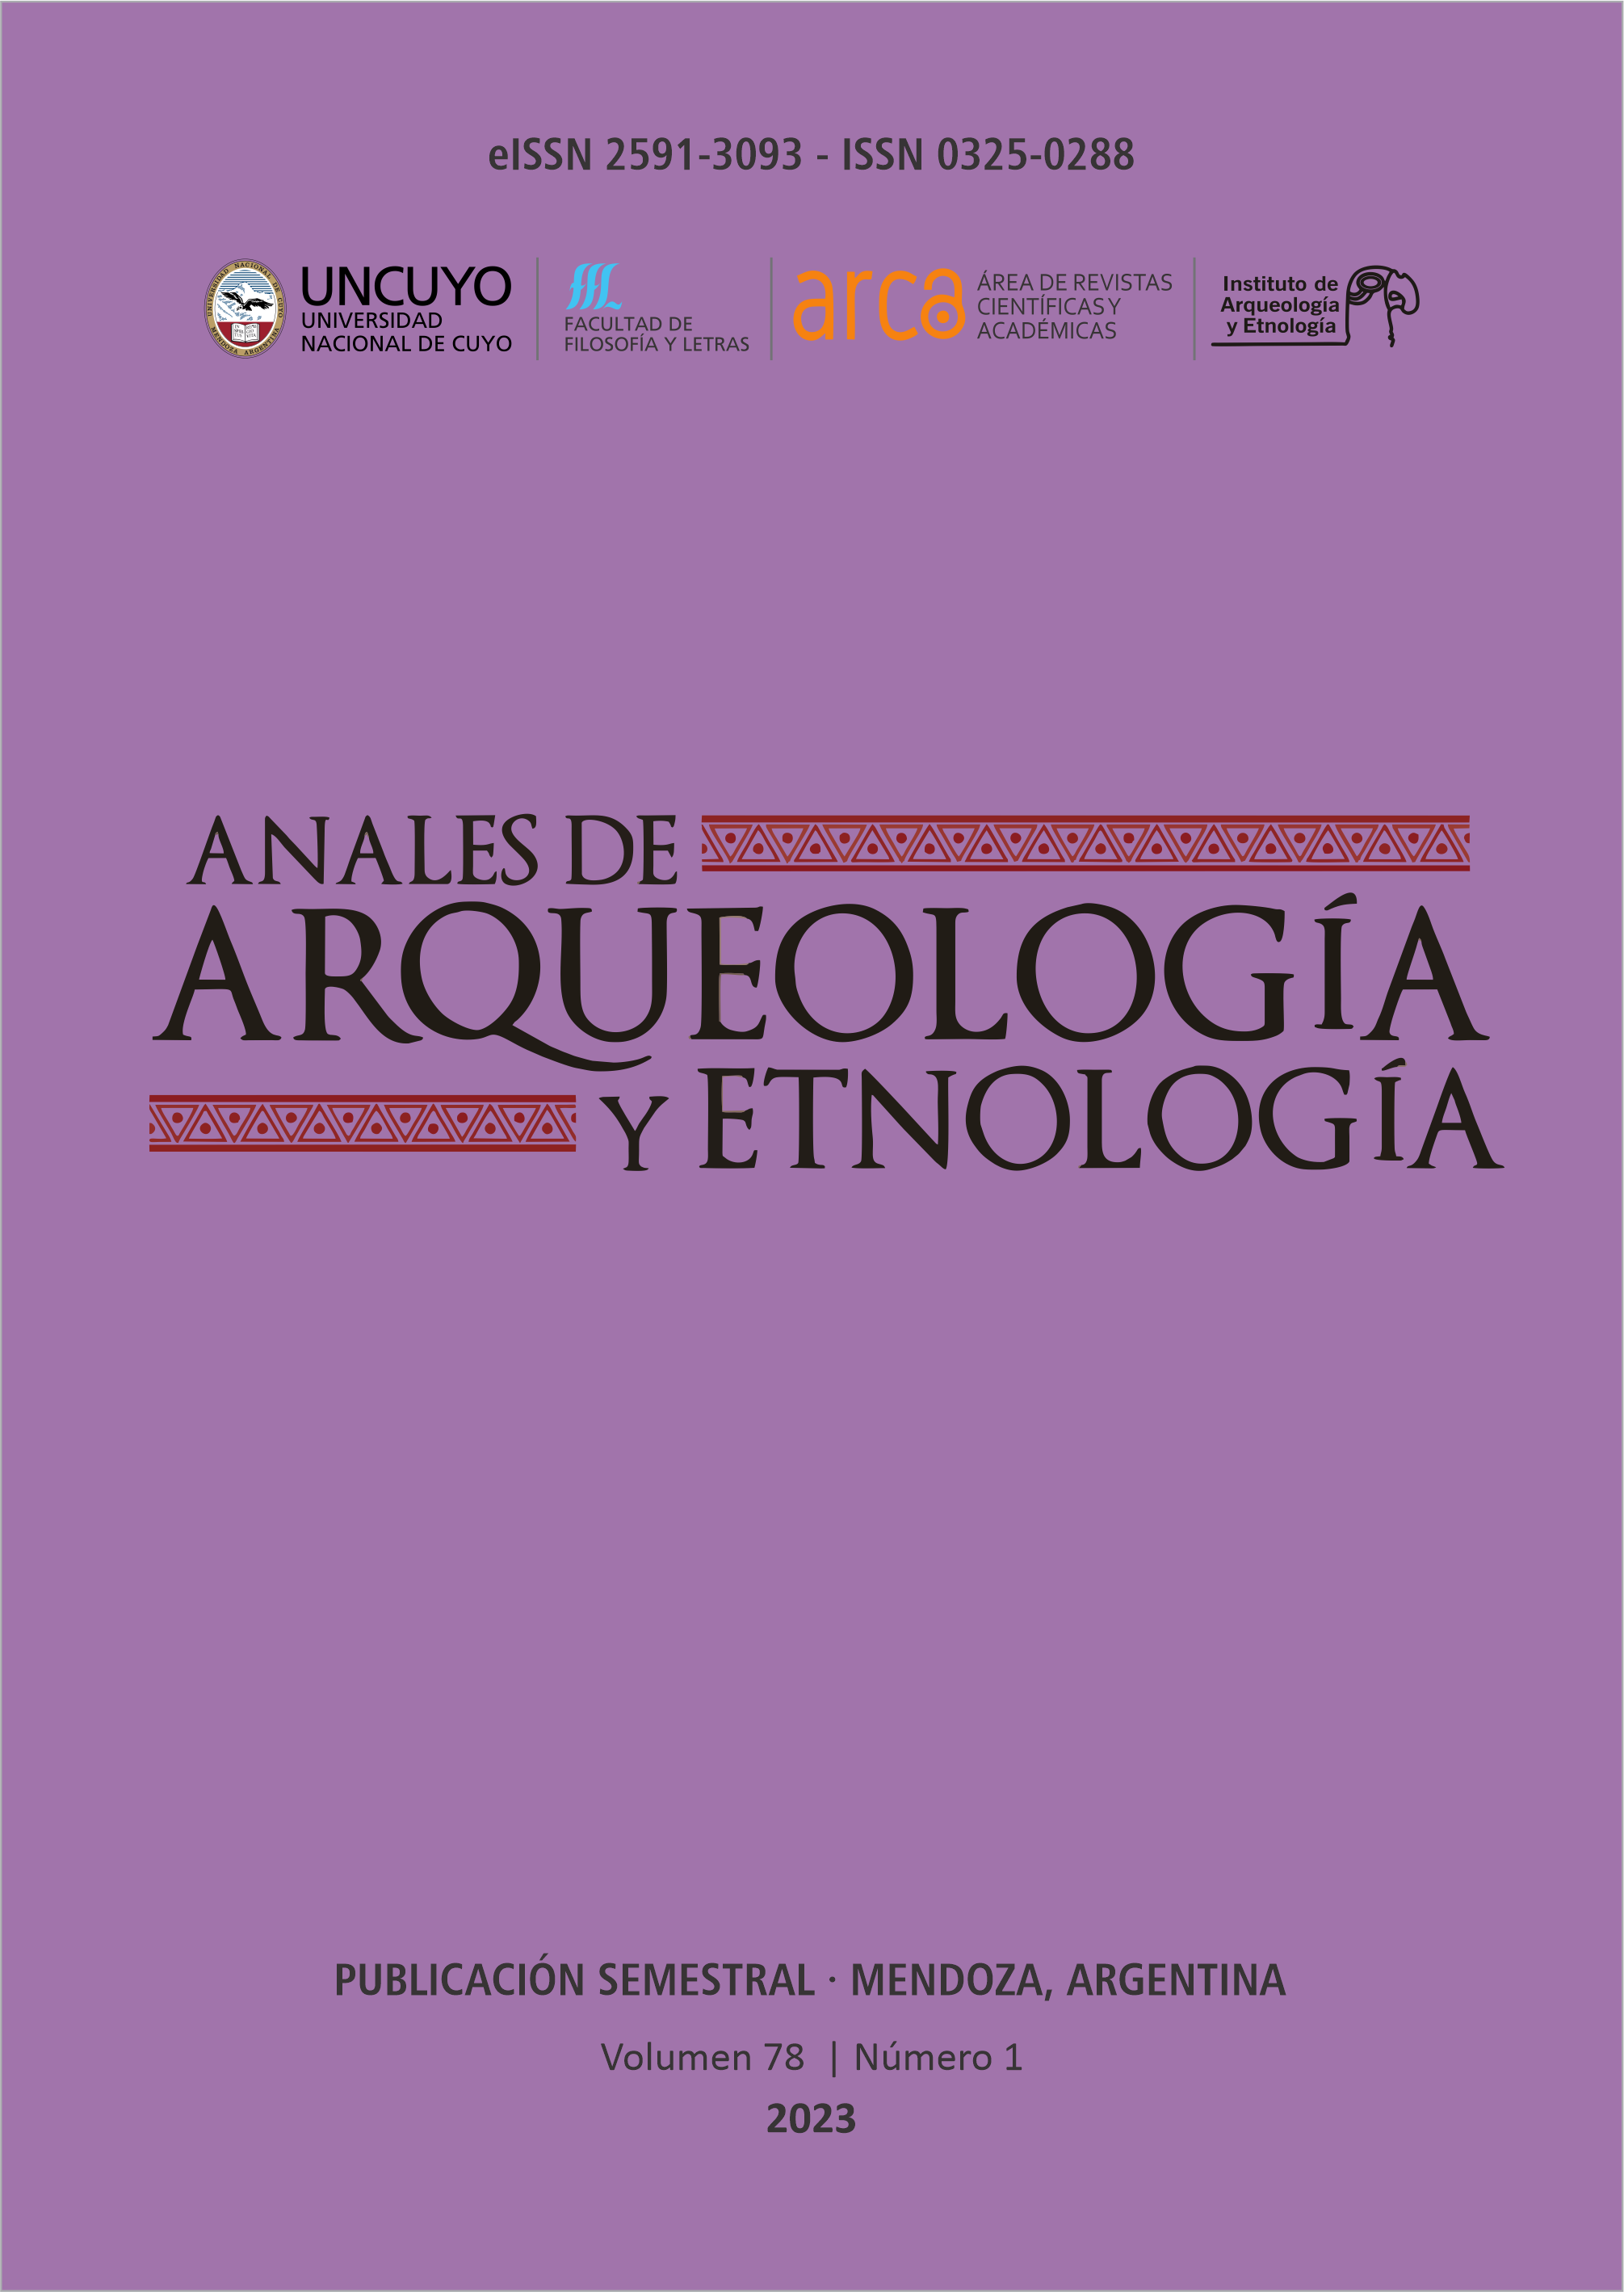 Tapa Volumen 78 Número 1 de Anales de Arqueología y Etnología